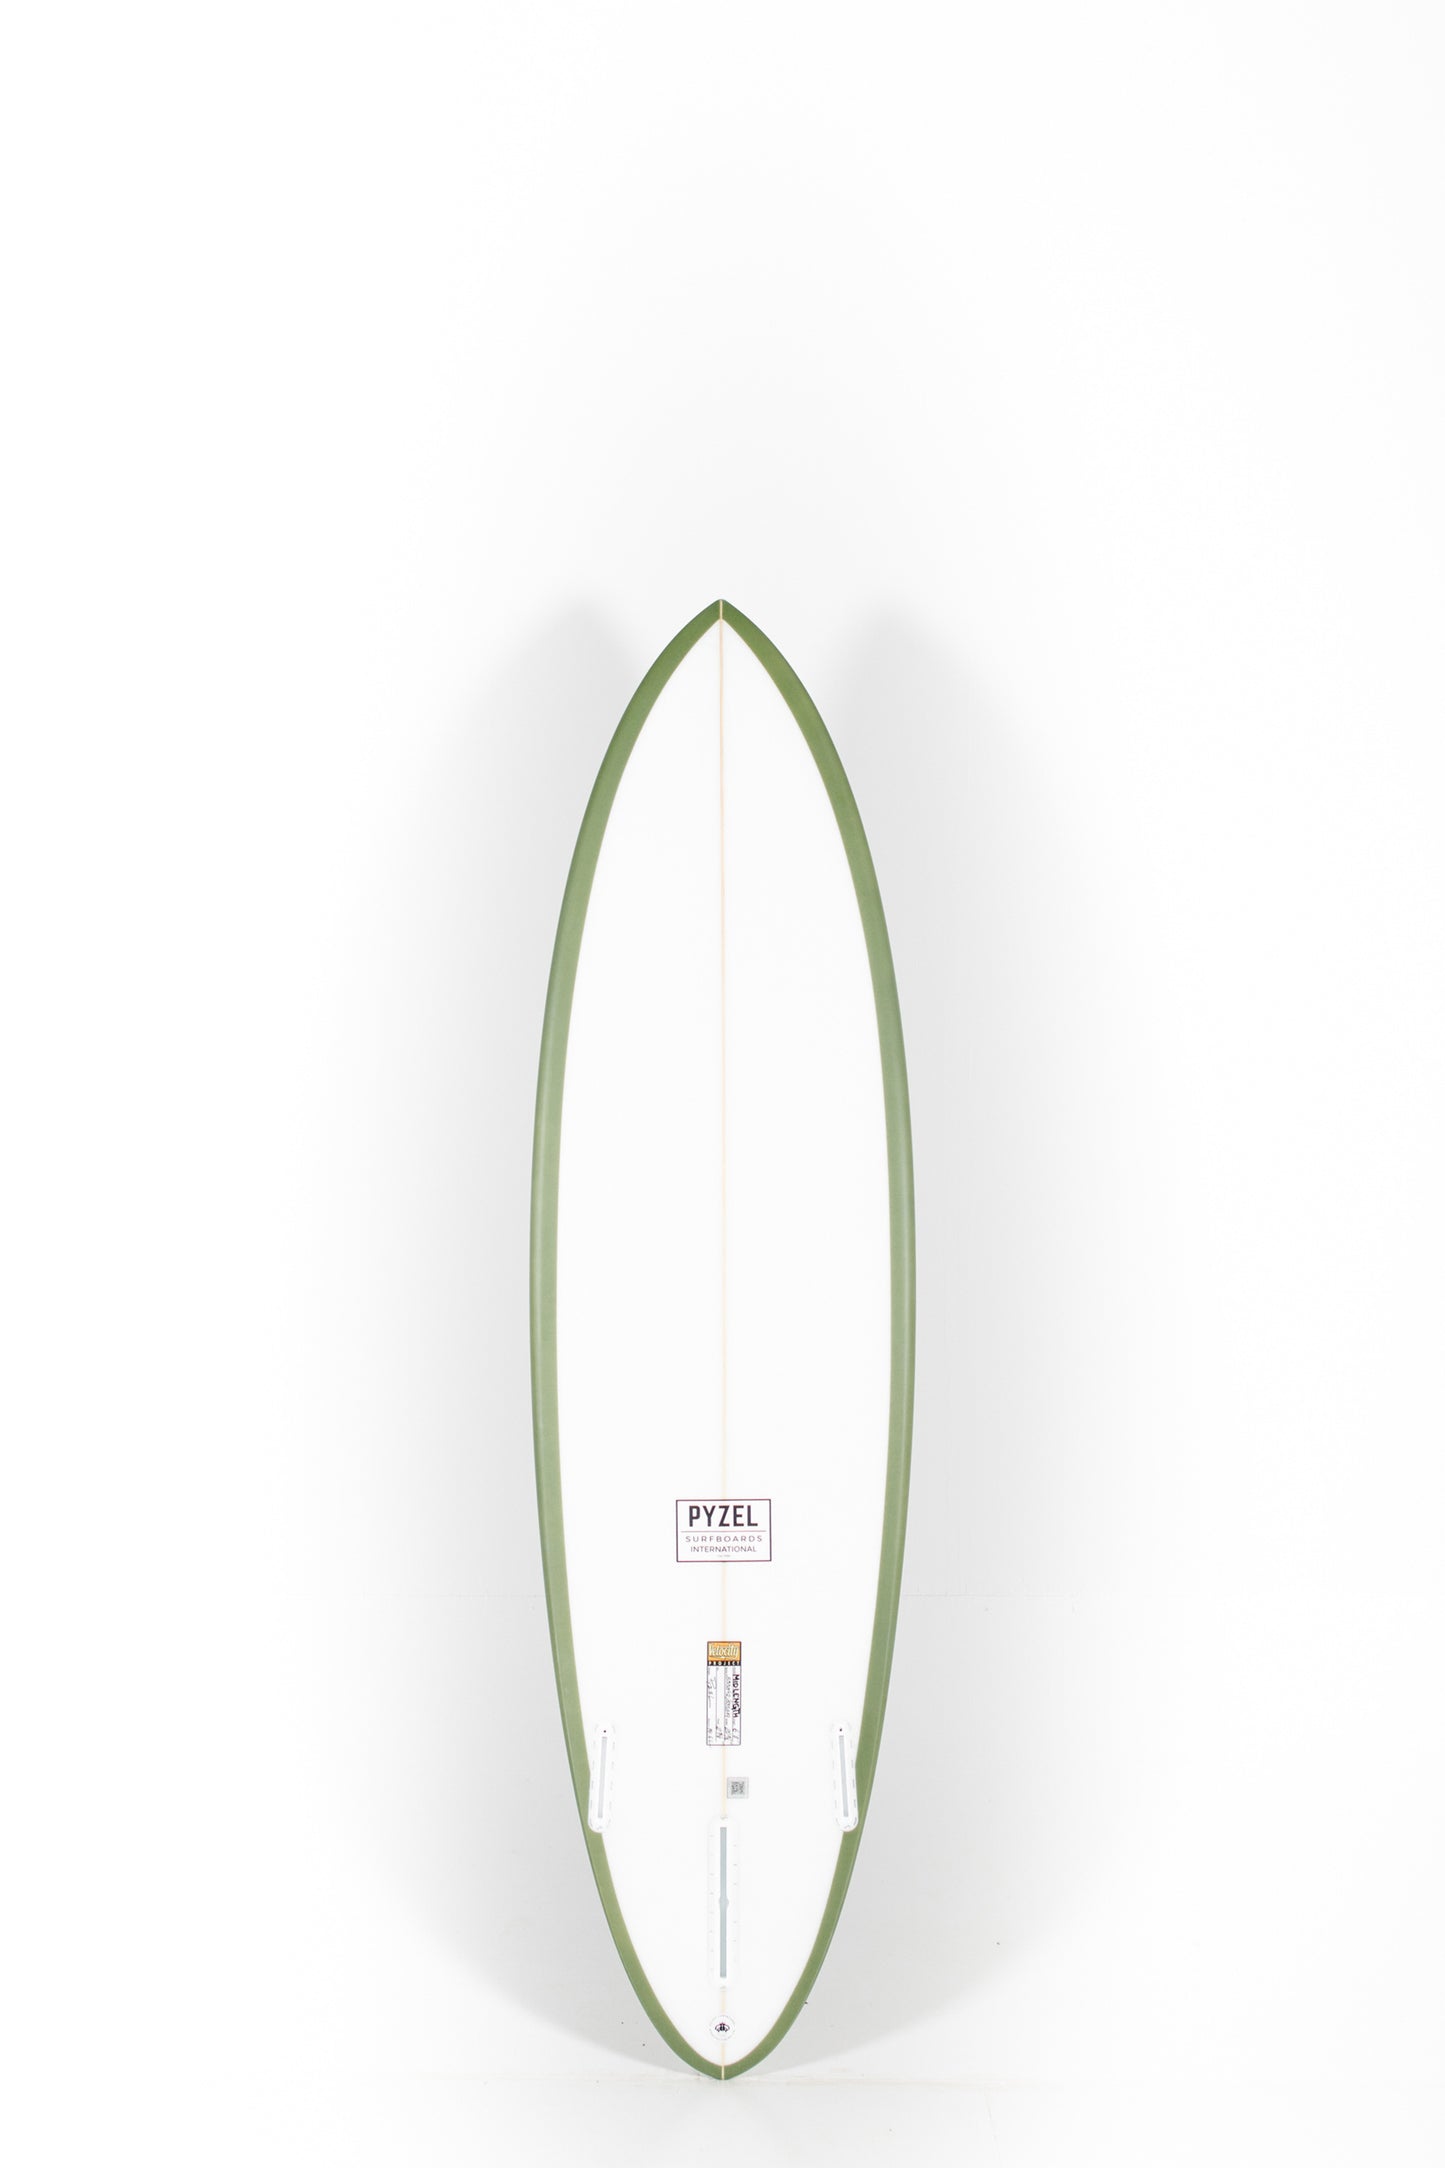 Pukas Surf Shop - Pyzel Surfboards - MID LENGTH CRISIS - 6'8"x20 5/8"x2 5/8"x38.60L.  - REF.555319